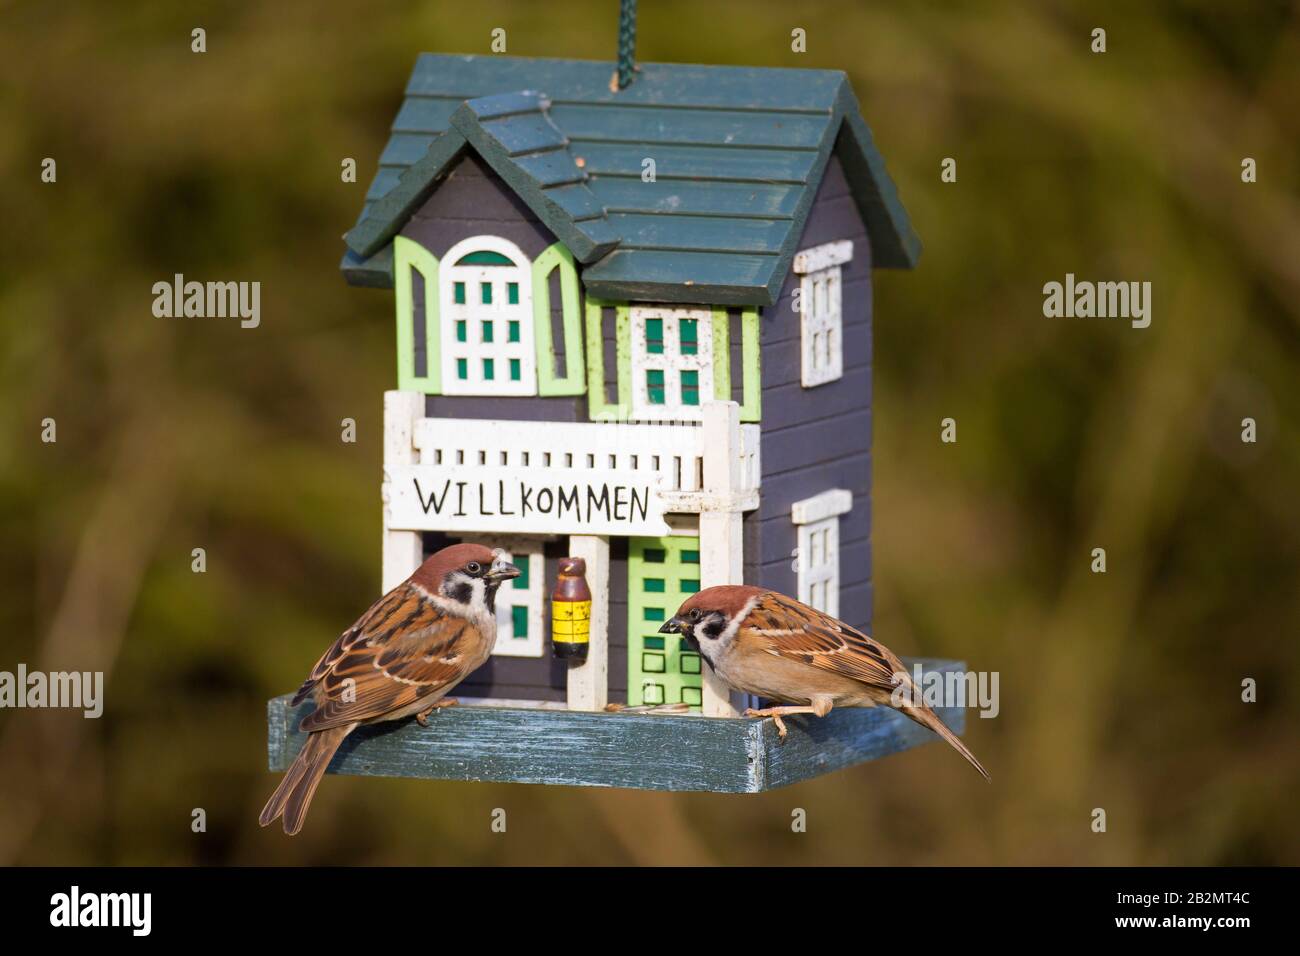 Deux sparrows d'arbres eurasiens (Passer montanus) mangeant des graines du jardin décoré d'oiseau / d'engraissement d'oiseaux Banque D'Images